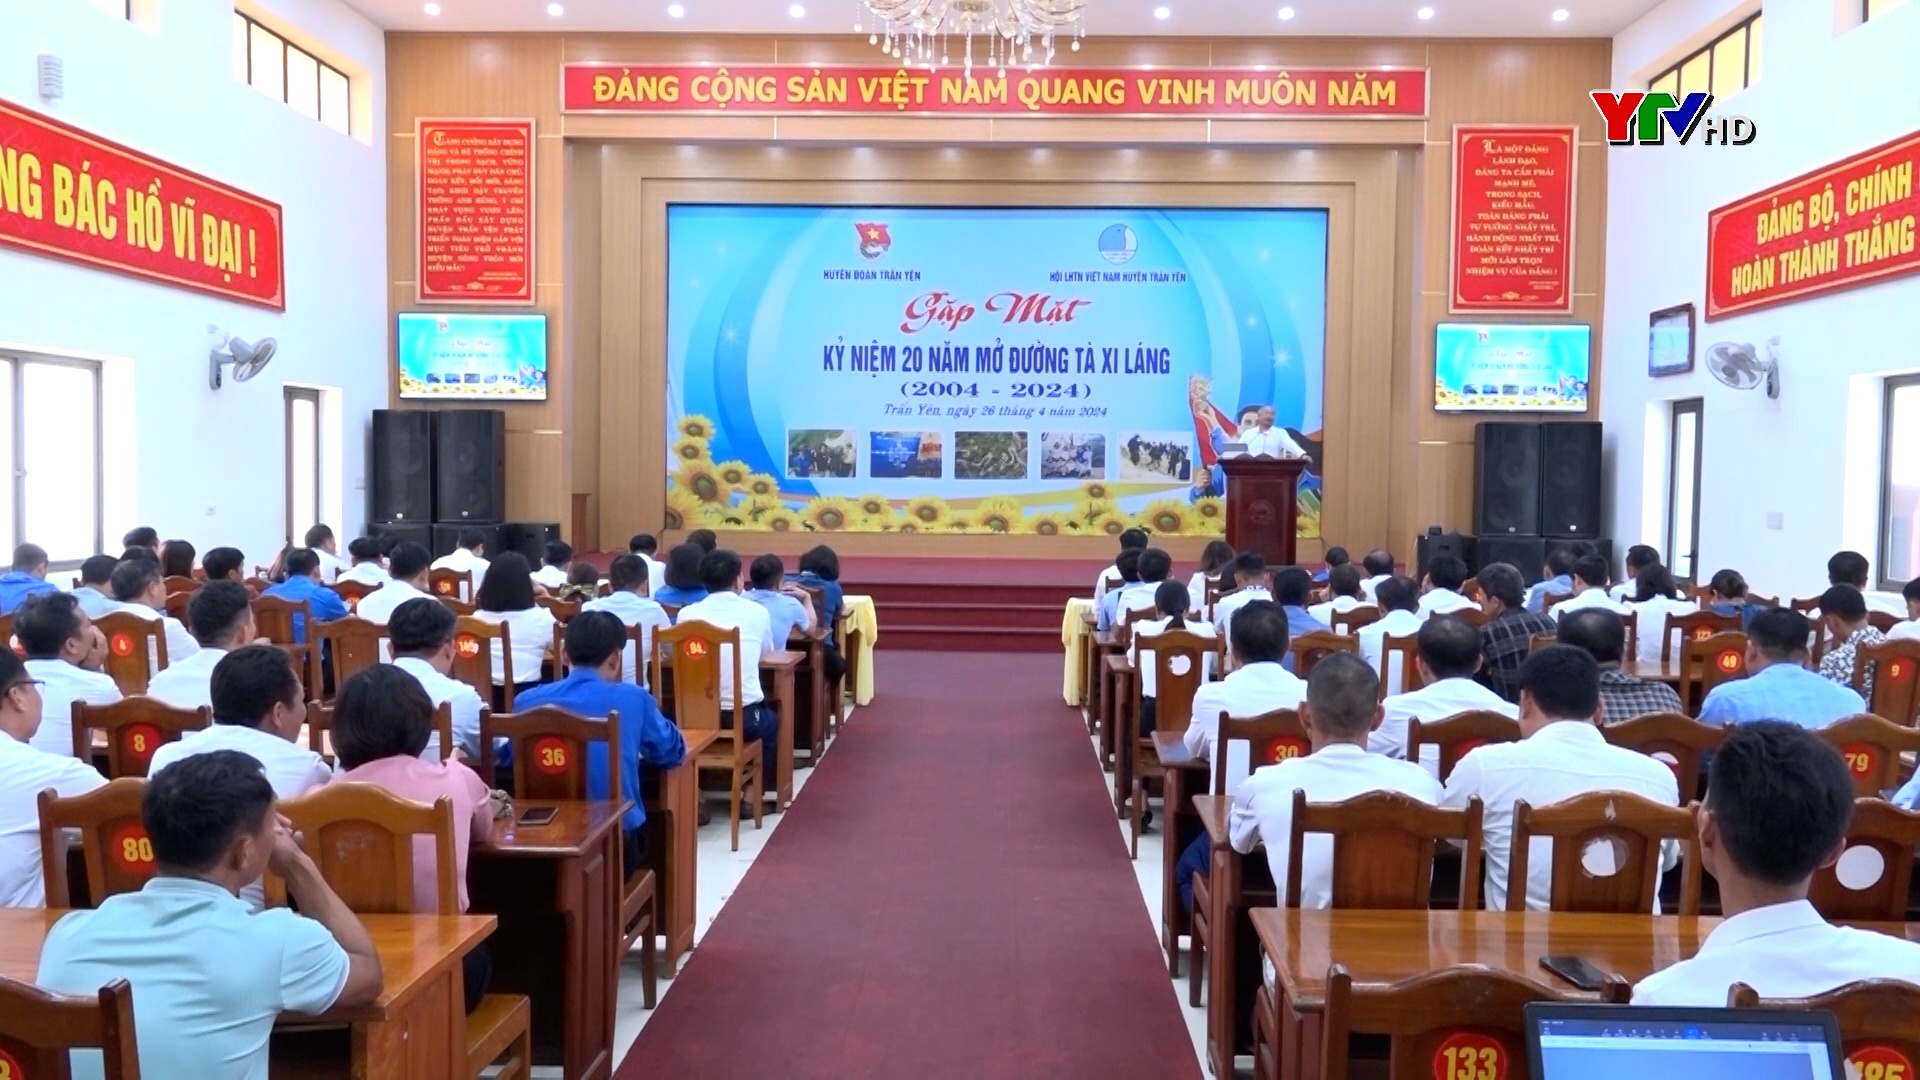 Trấn Yên gặp mặt các cán bộ Đoàn, đoàn viên thanh niên tham gia công trình mở đường Tà Xi Láng, huyện Trạm Tấu